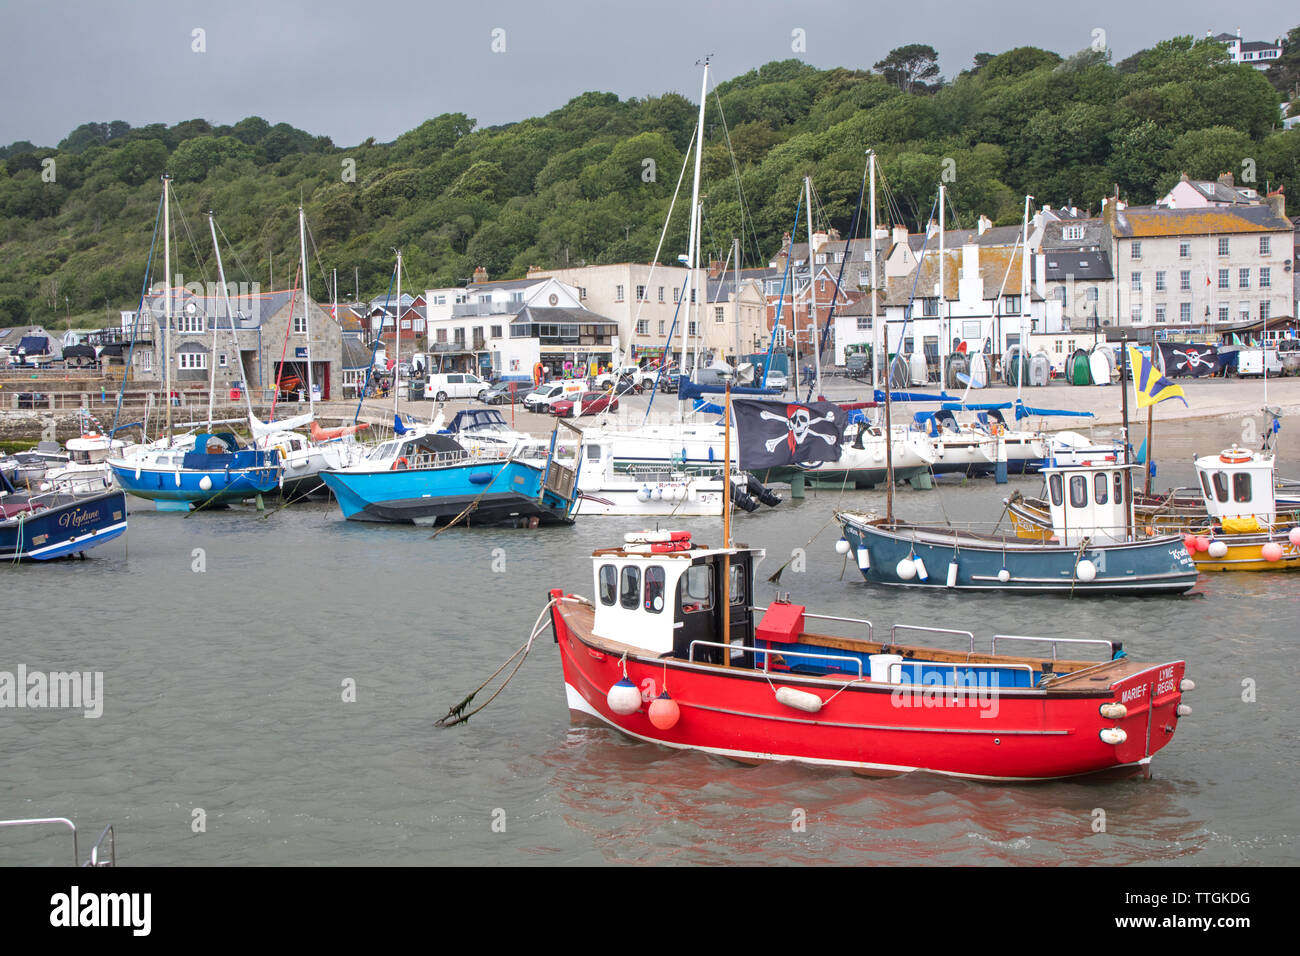 Angeln und Boote im Hafen von Lyme Regis, Dorset, England, Großbritannien Stockfoto